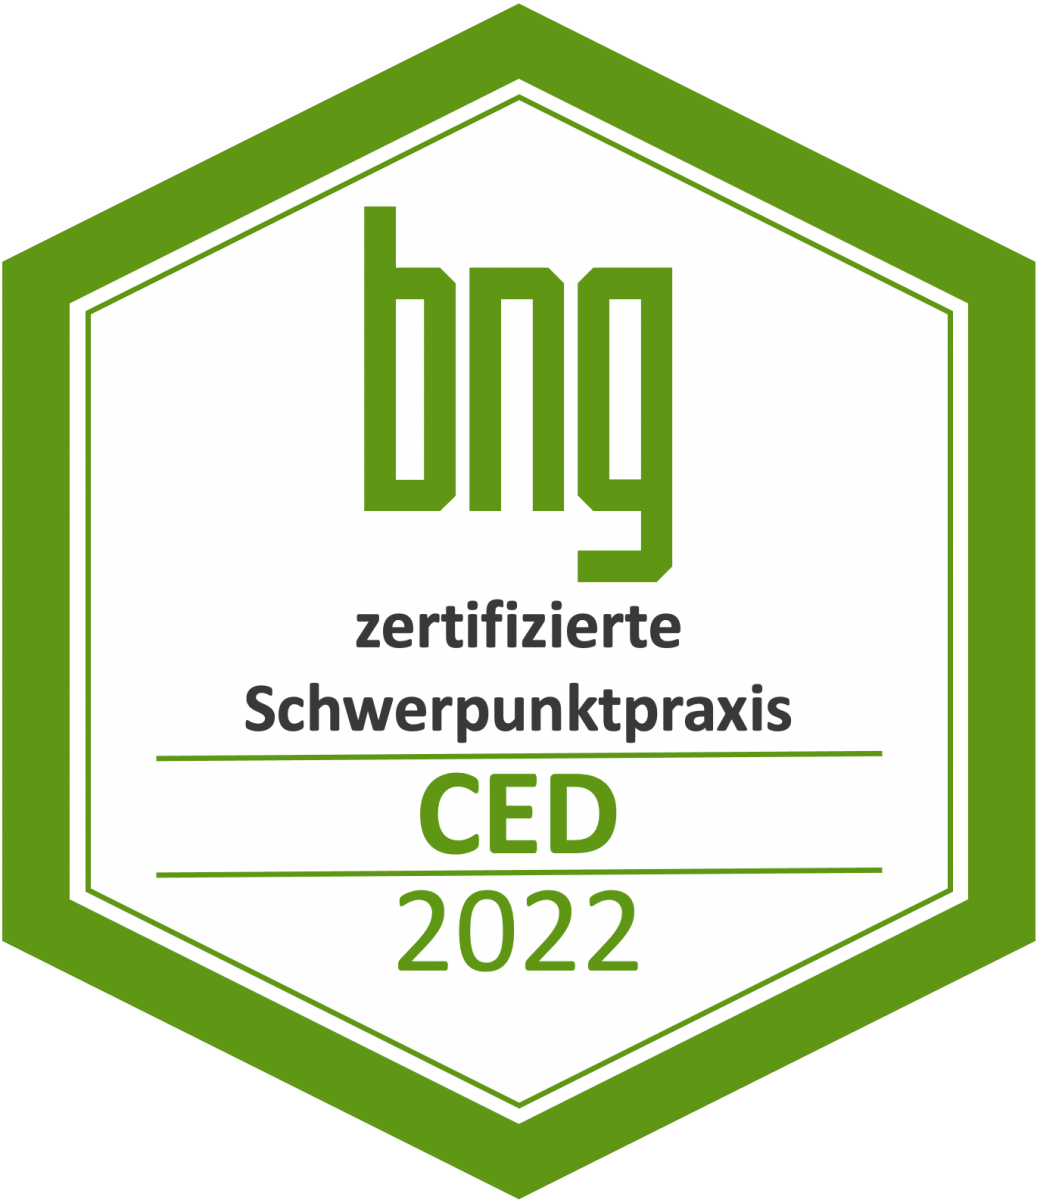 2022-siegel-sp-ced-hg-transparent.png